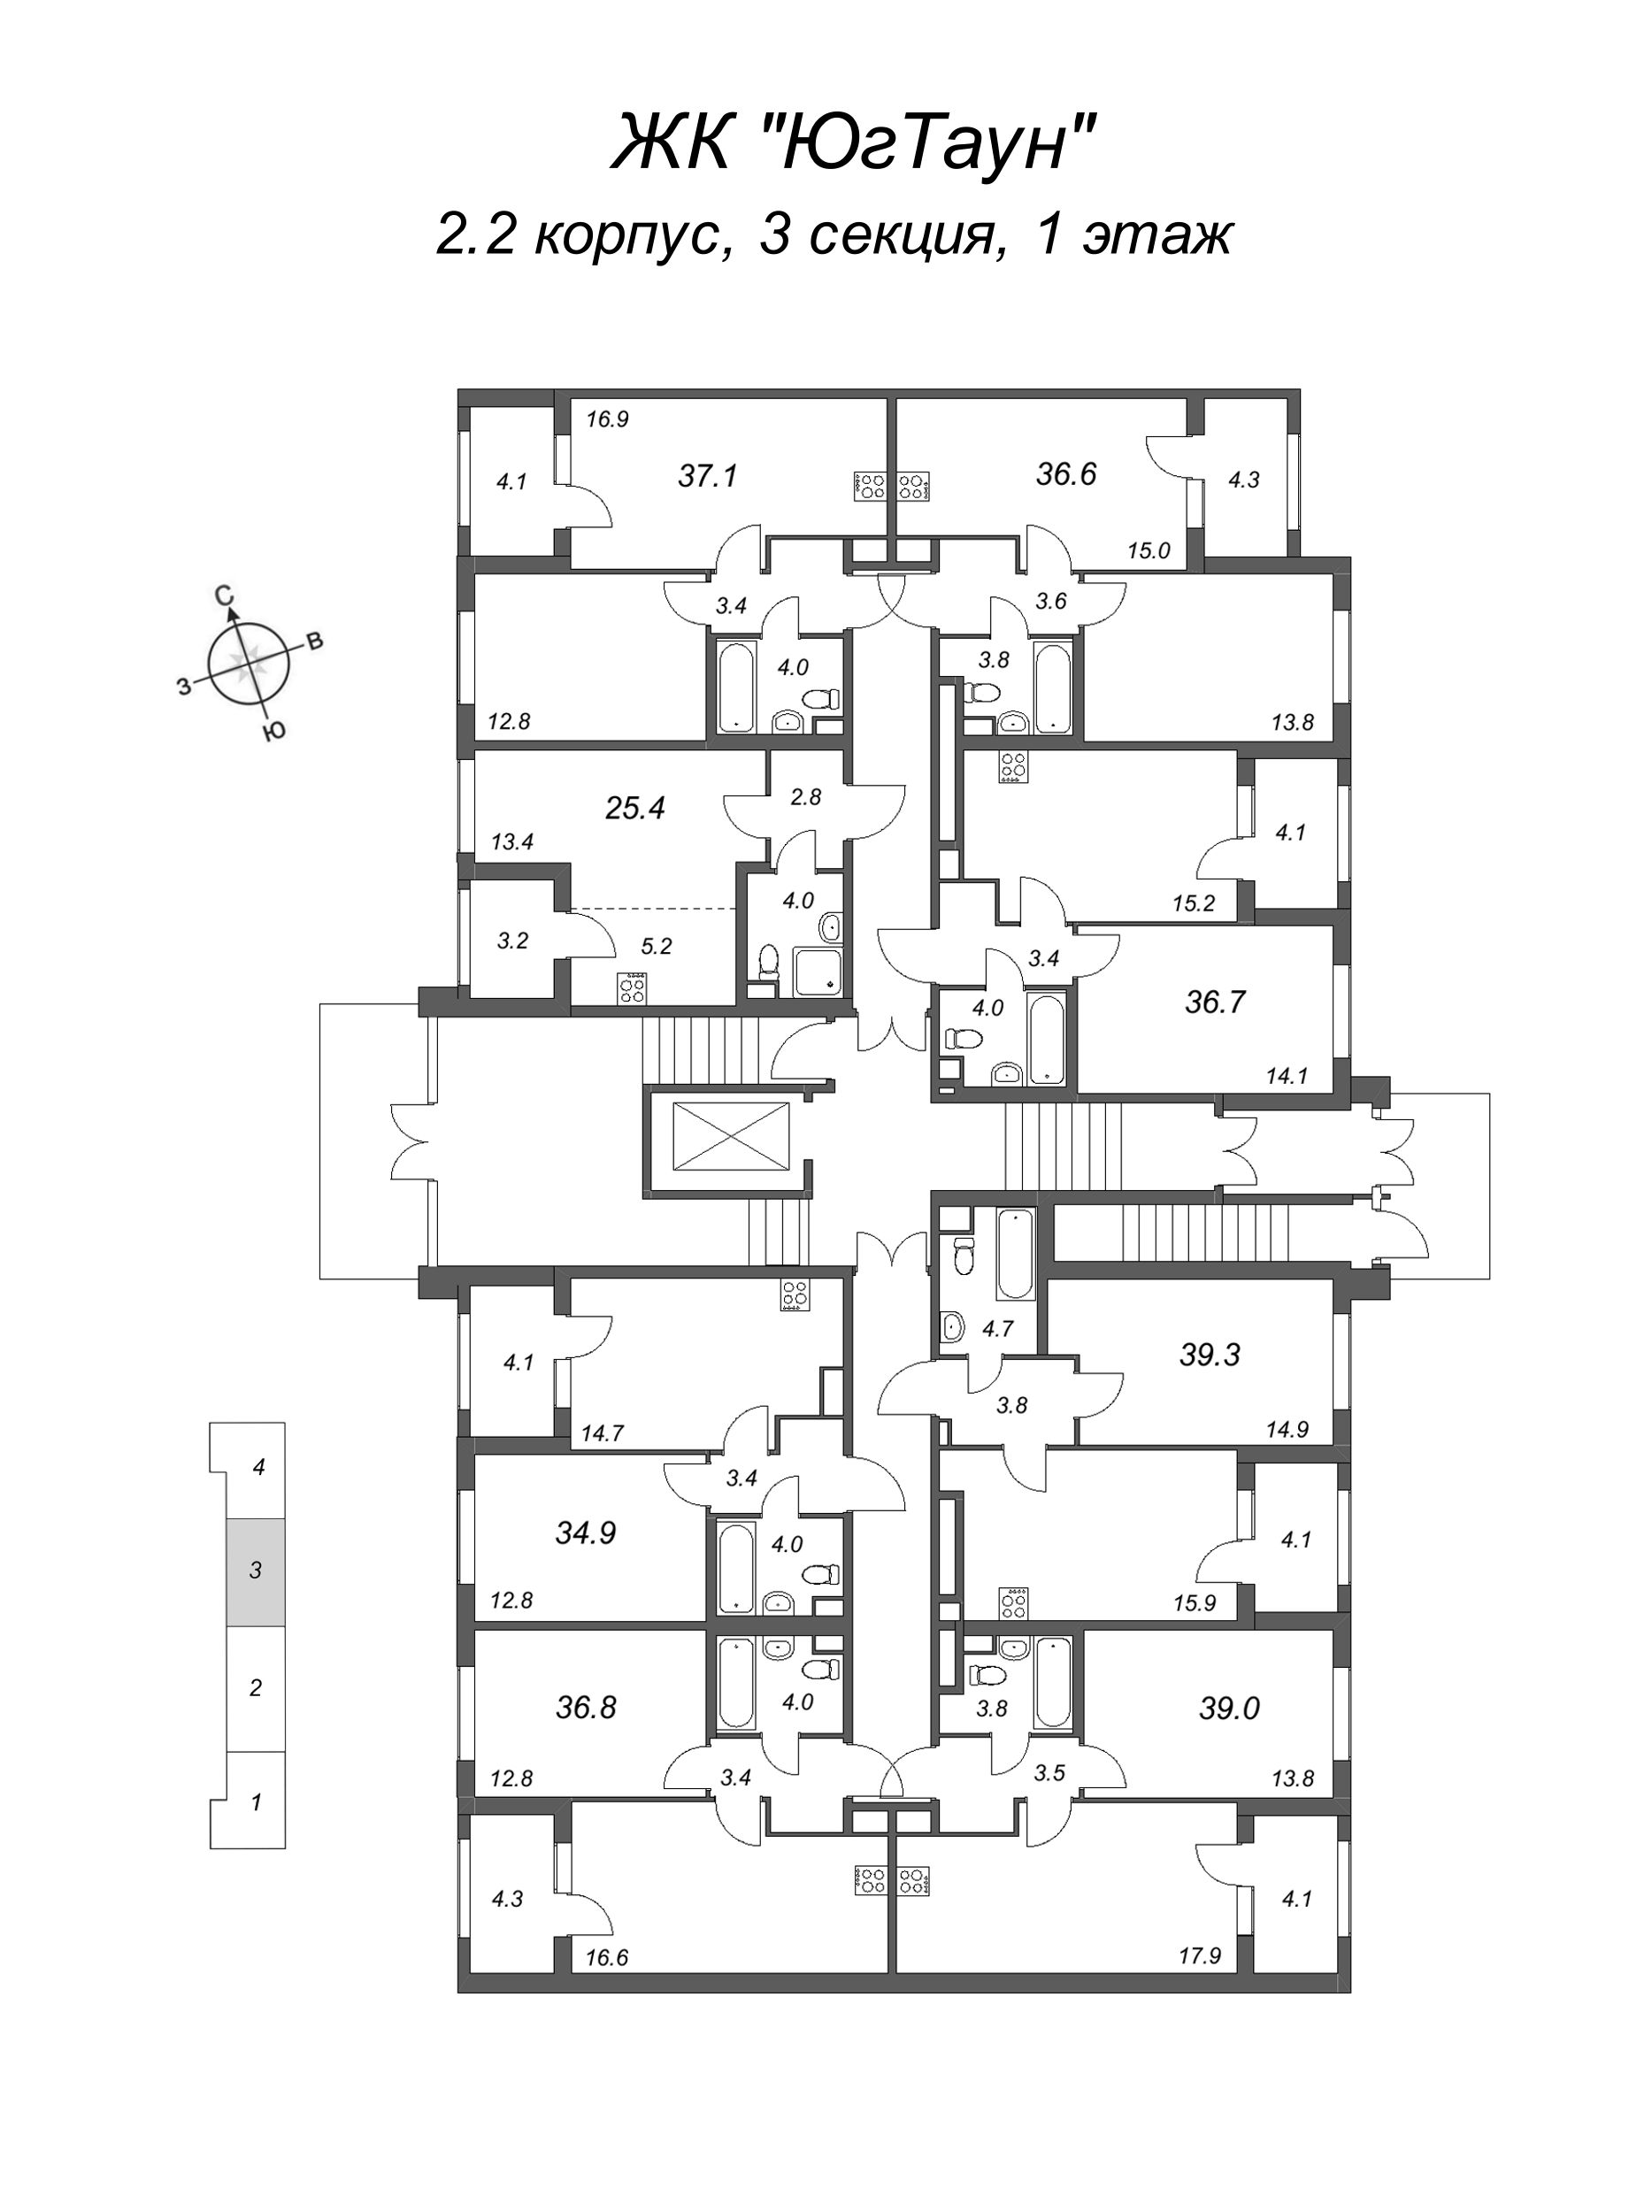 1-комнатная квартира, 34.9 м² в ЖК "ЮгТаун" - планировка этажа